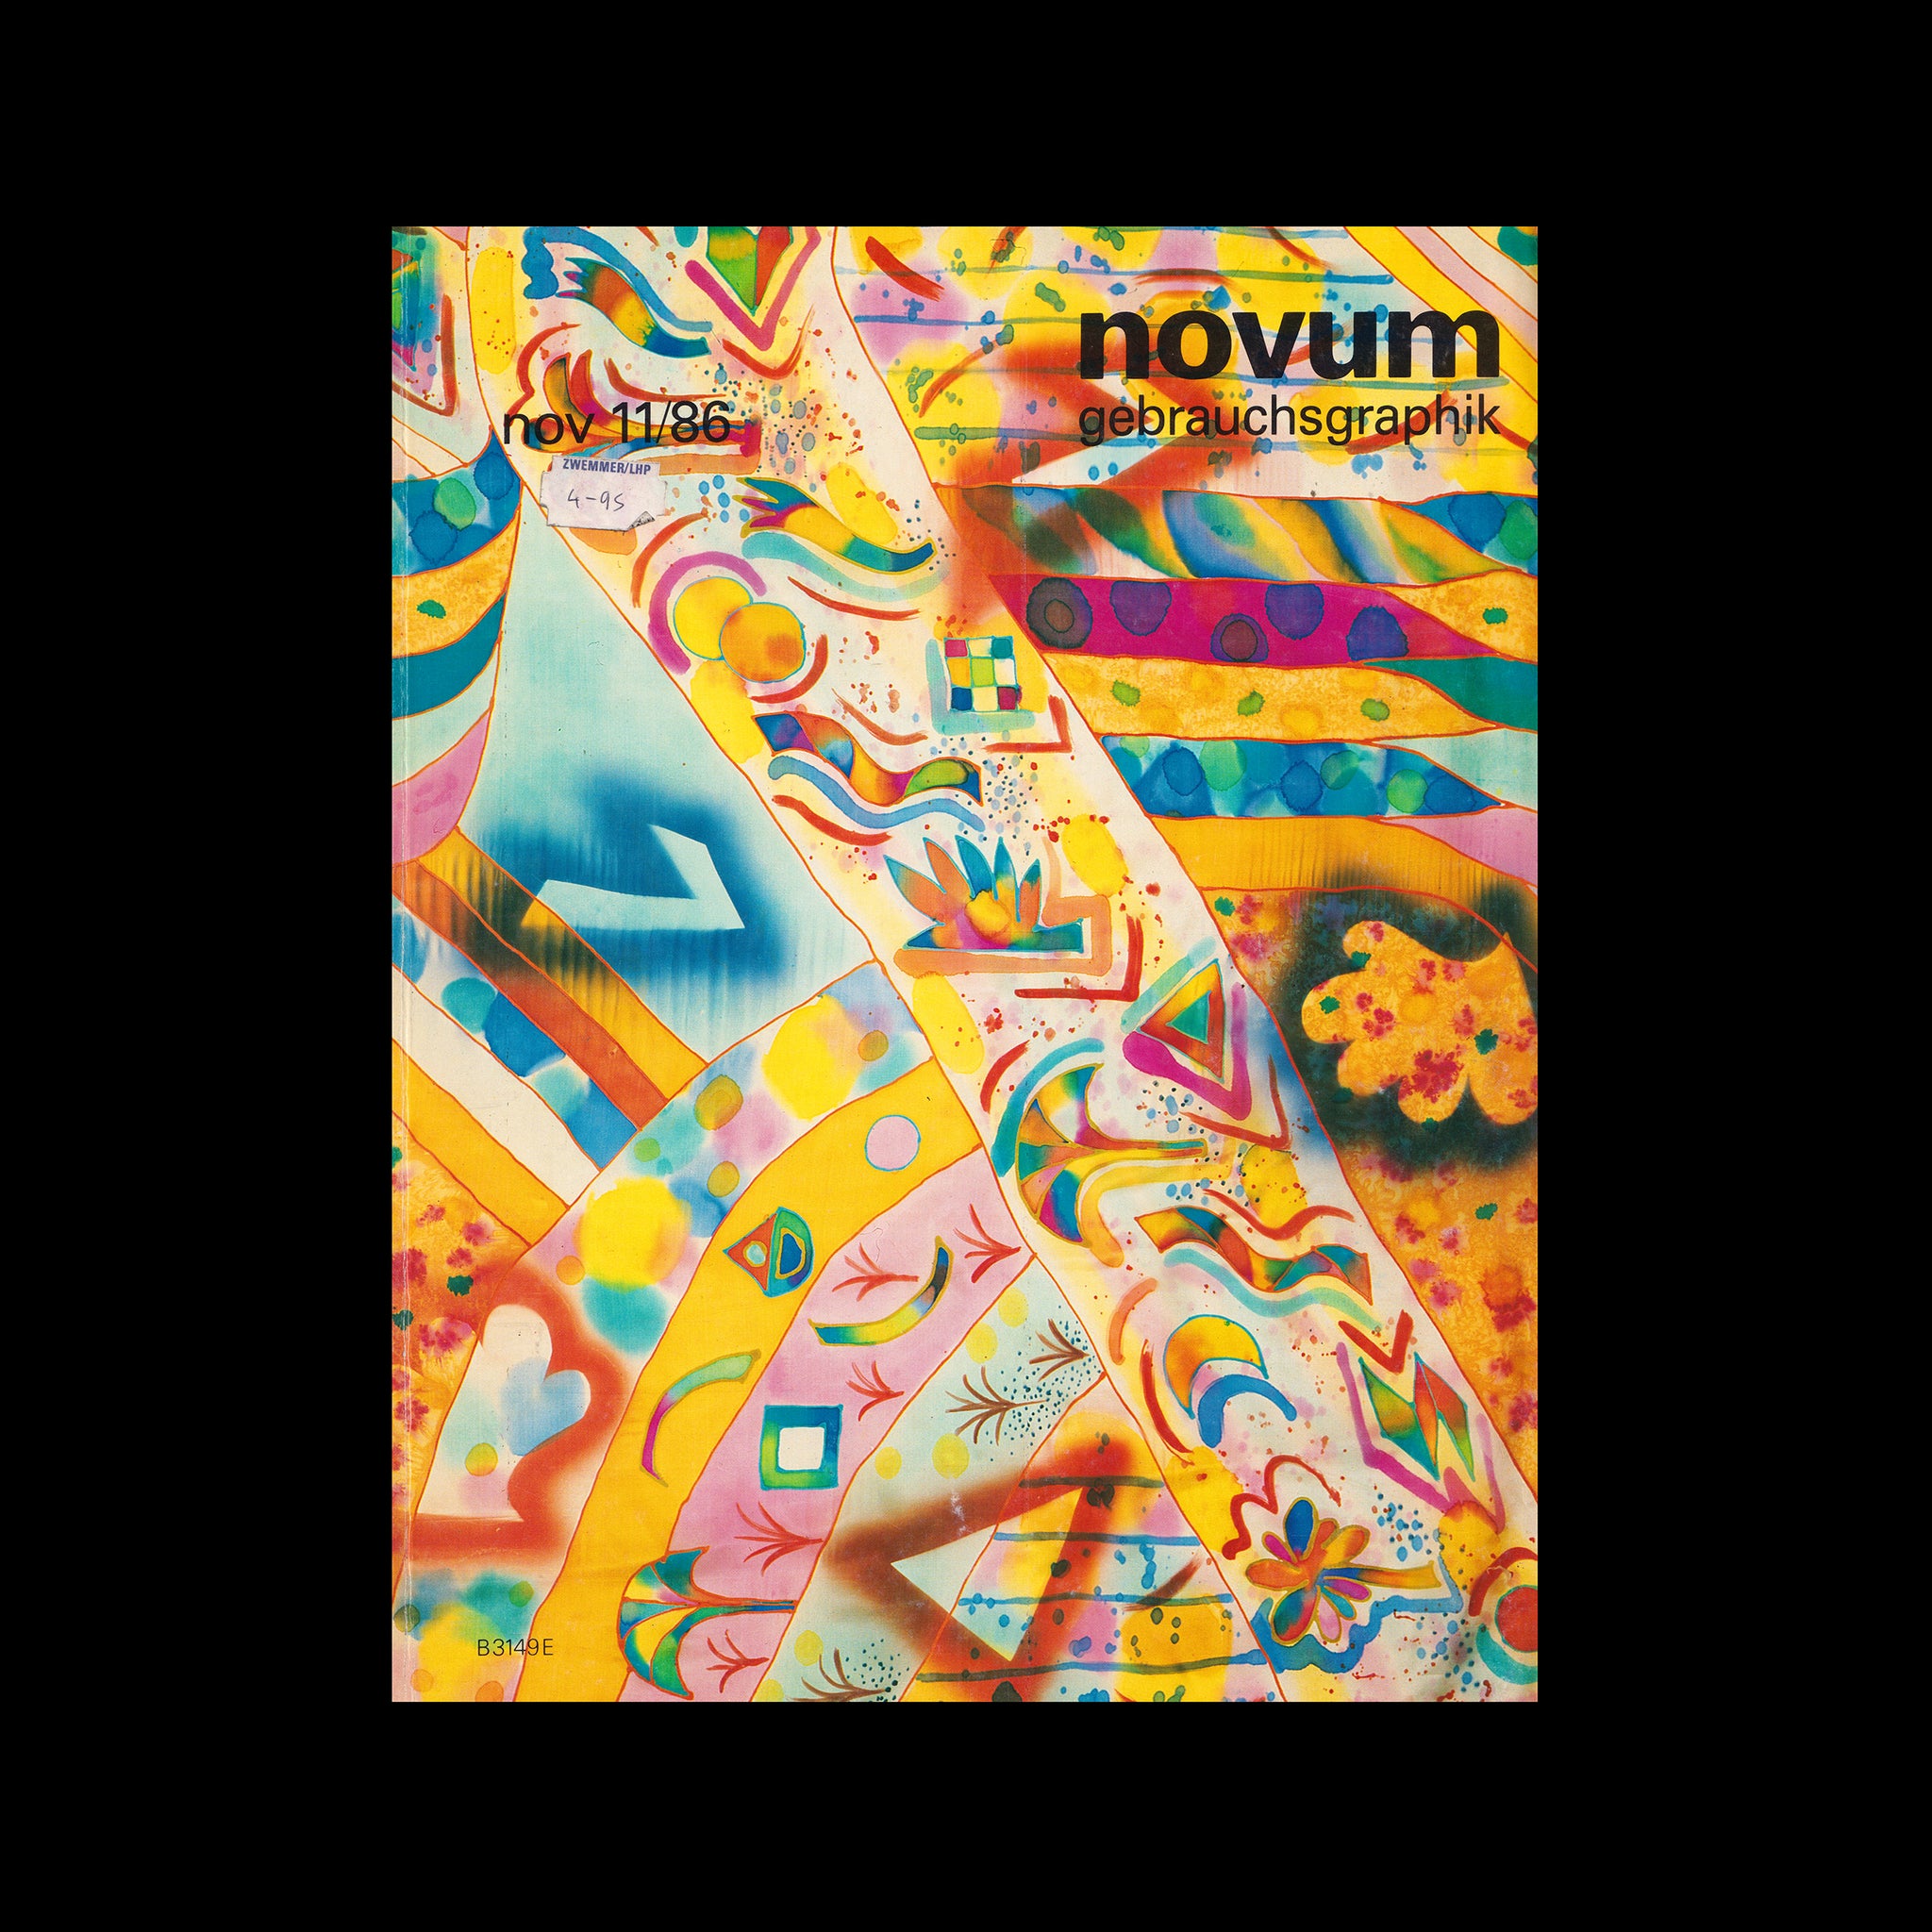 Novum Gebrauchsgraphik, November 1986, LogoArchive Shop